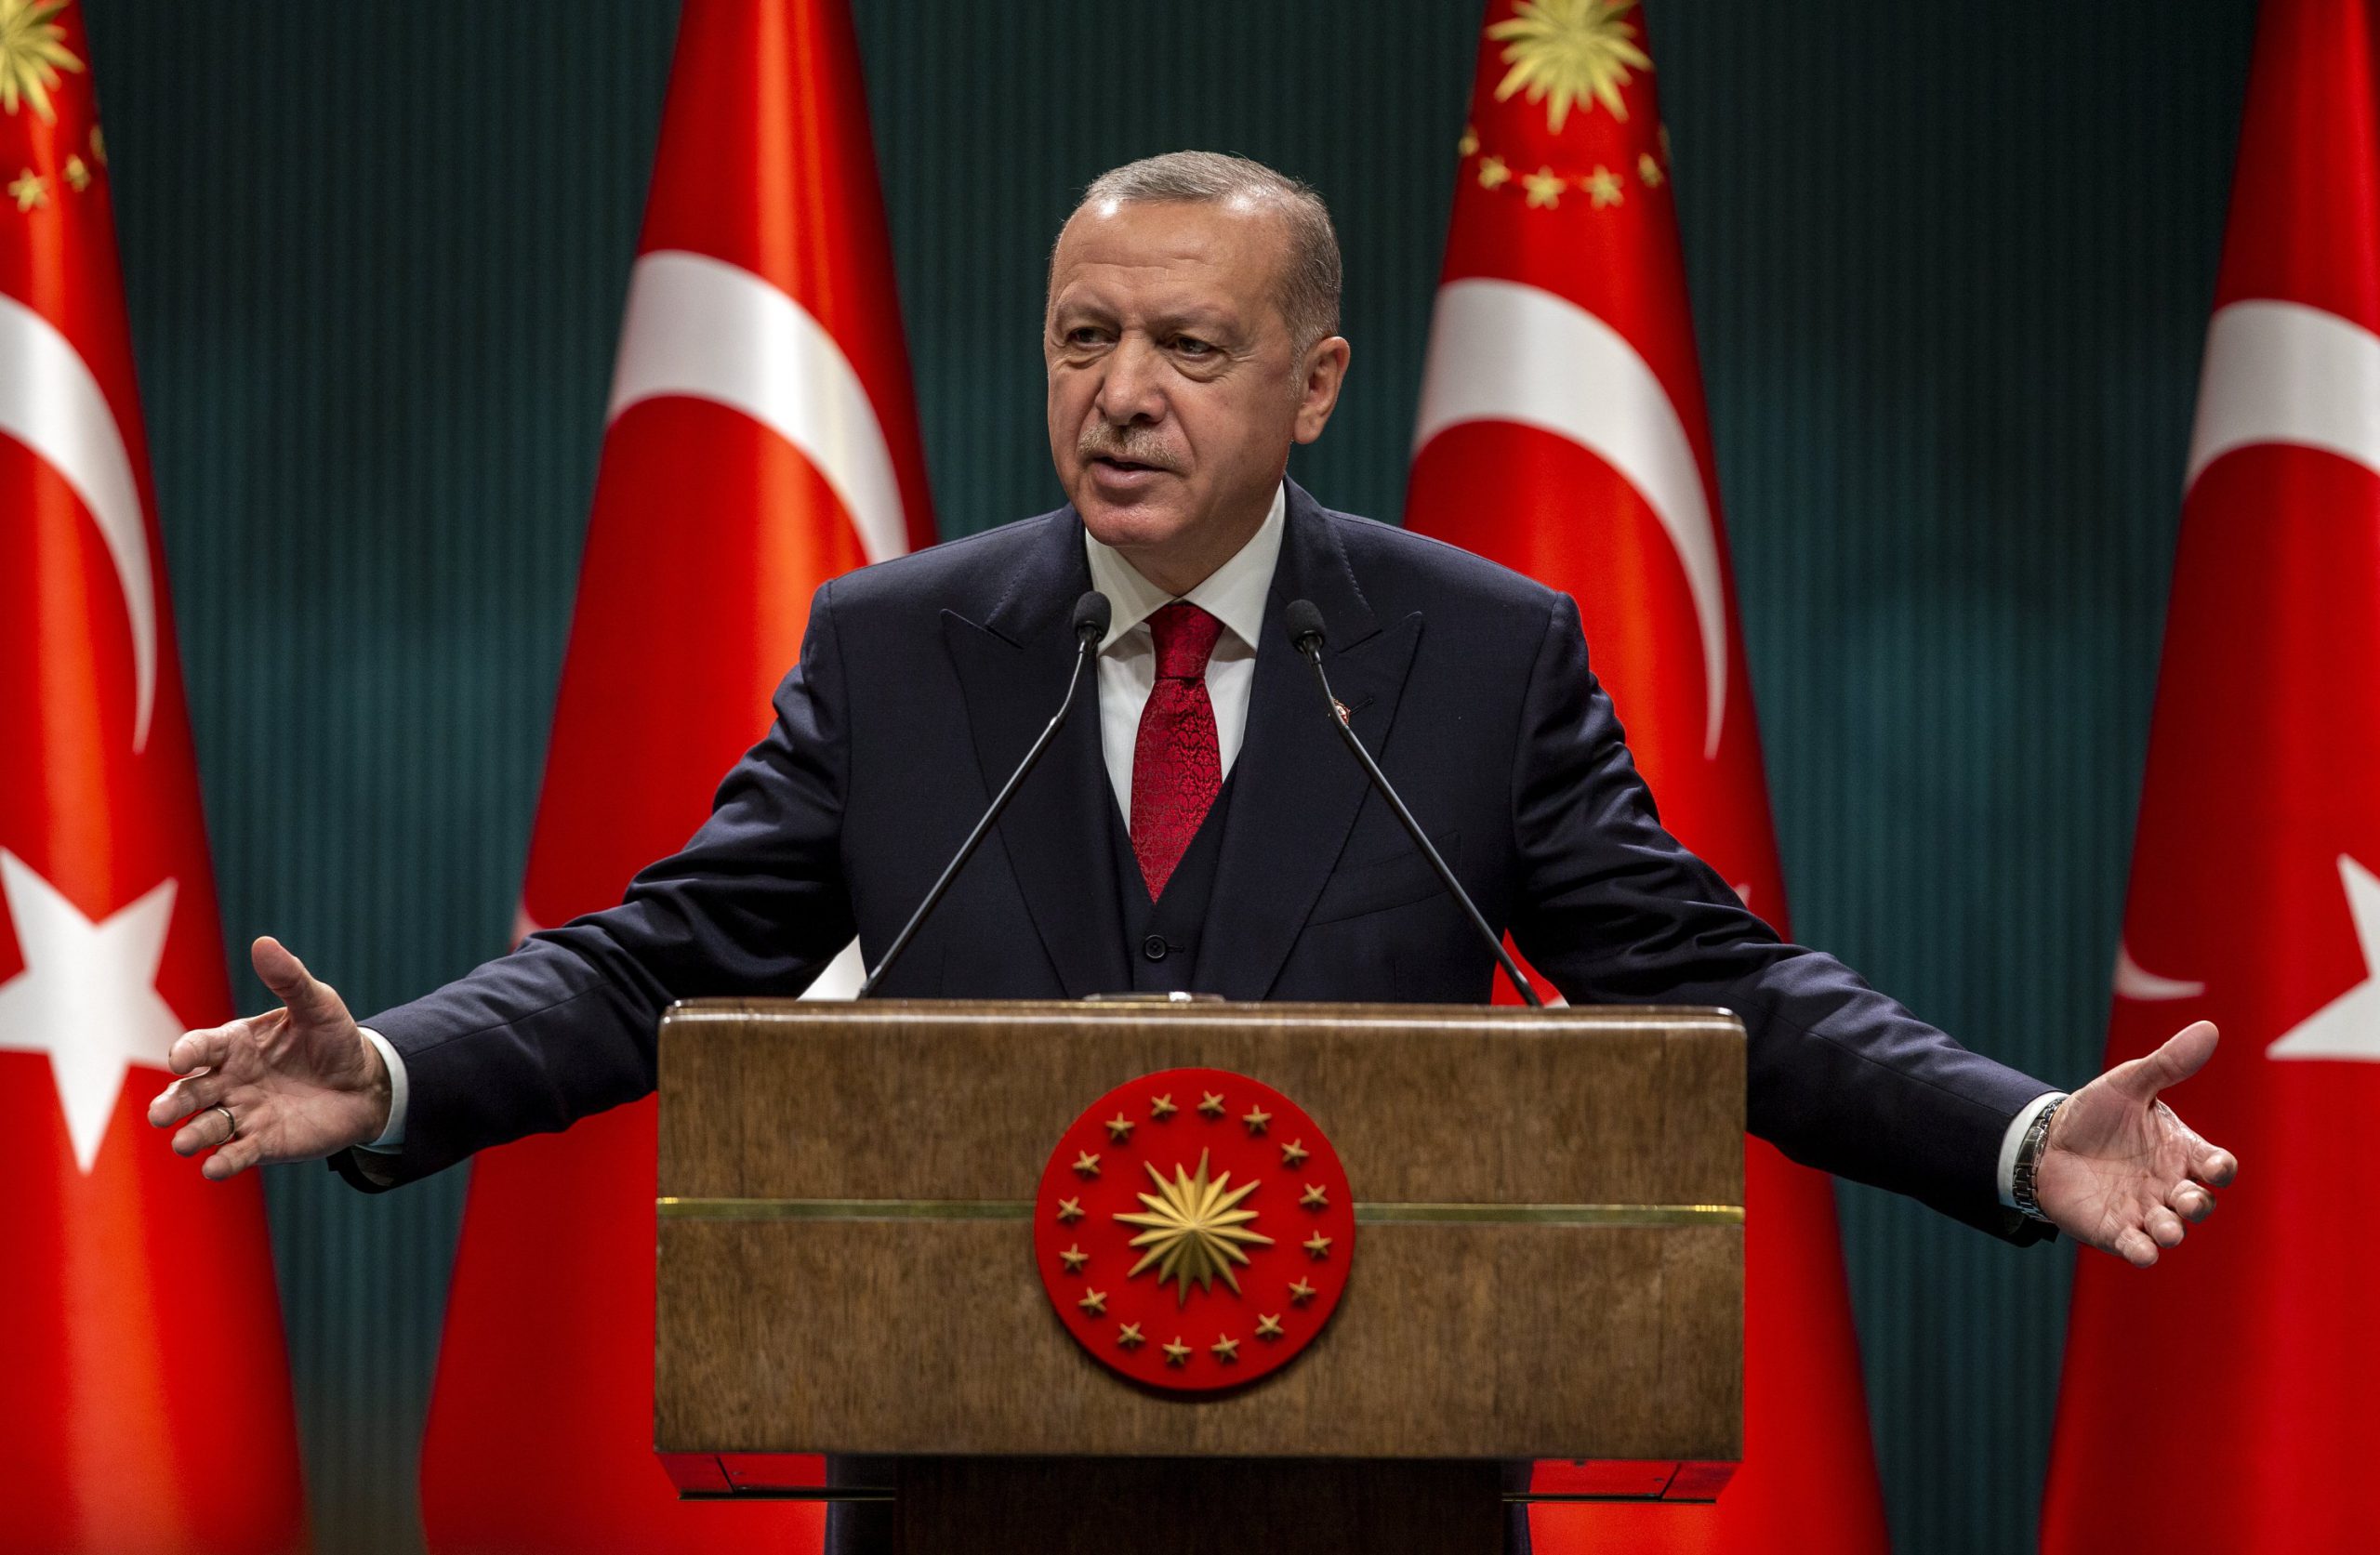 Recep Tayyip Erdogan, președintele Turciei, a reacționat dur în urma incidentului